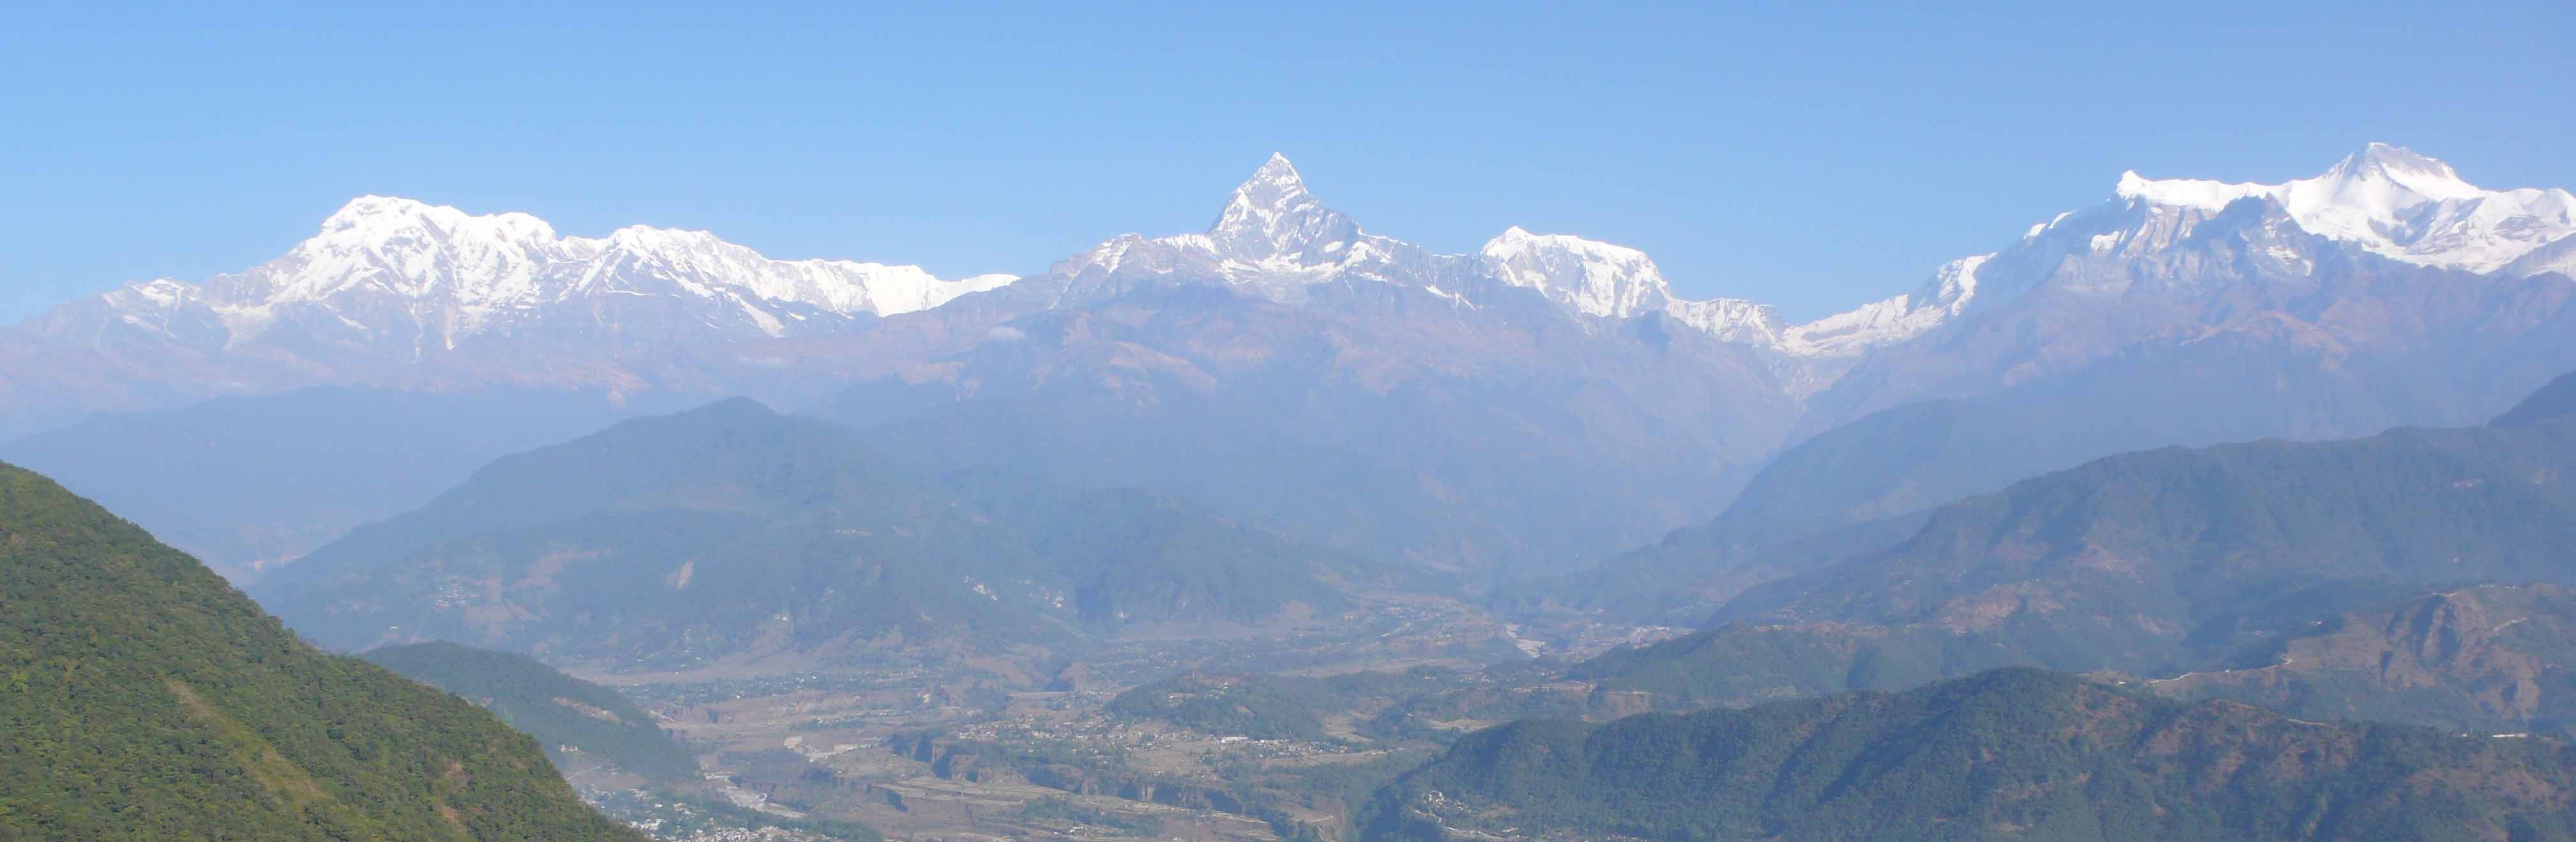 Trekking Poon Hill in the Annapurnas Region